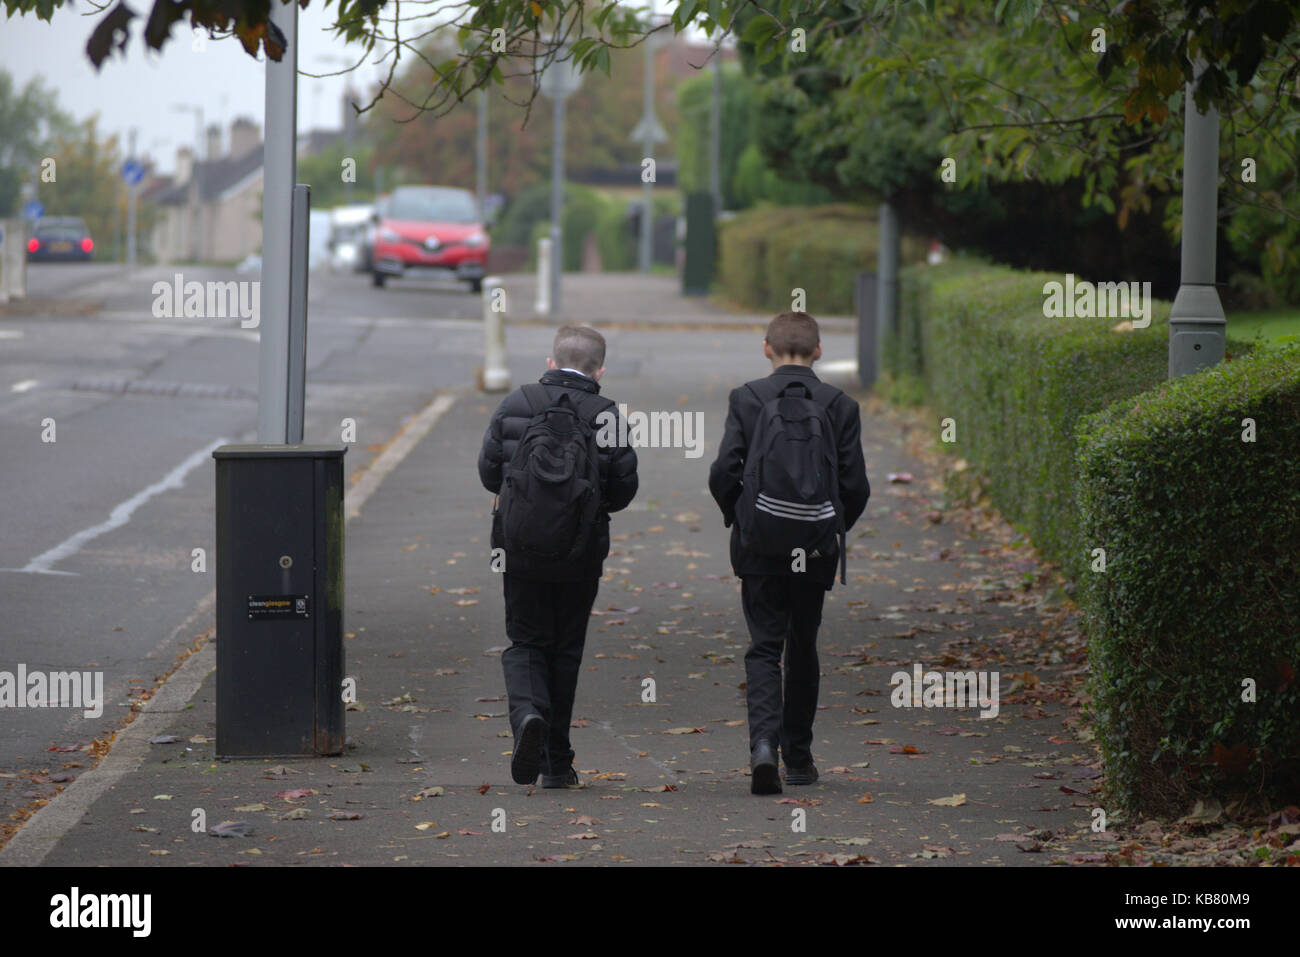 La British school bambini ragazzi su strada messing about walking a casa da scuola insieme due ragazzi auto sull orizzonte infausto Foto Stock